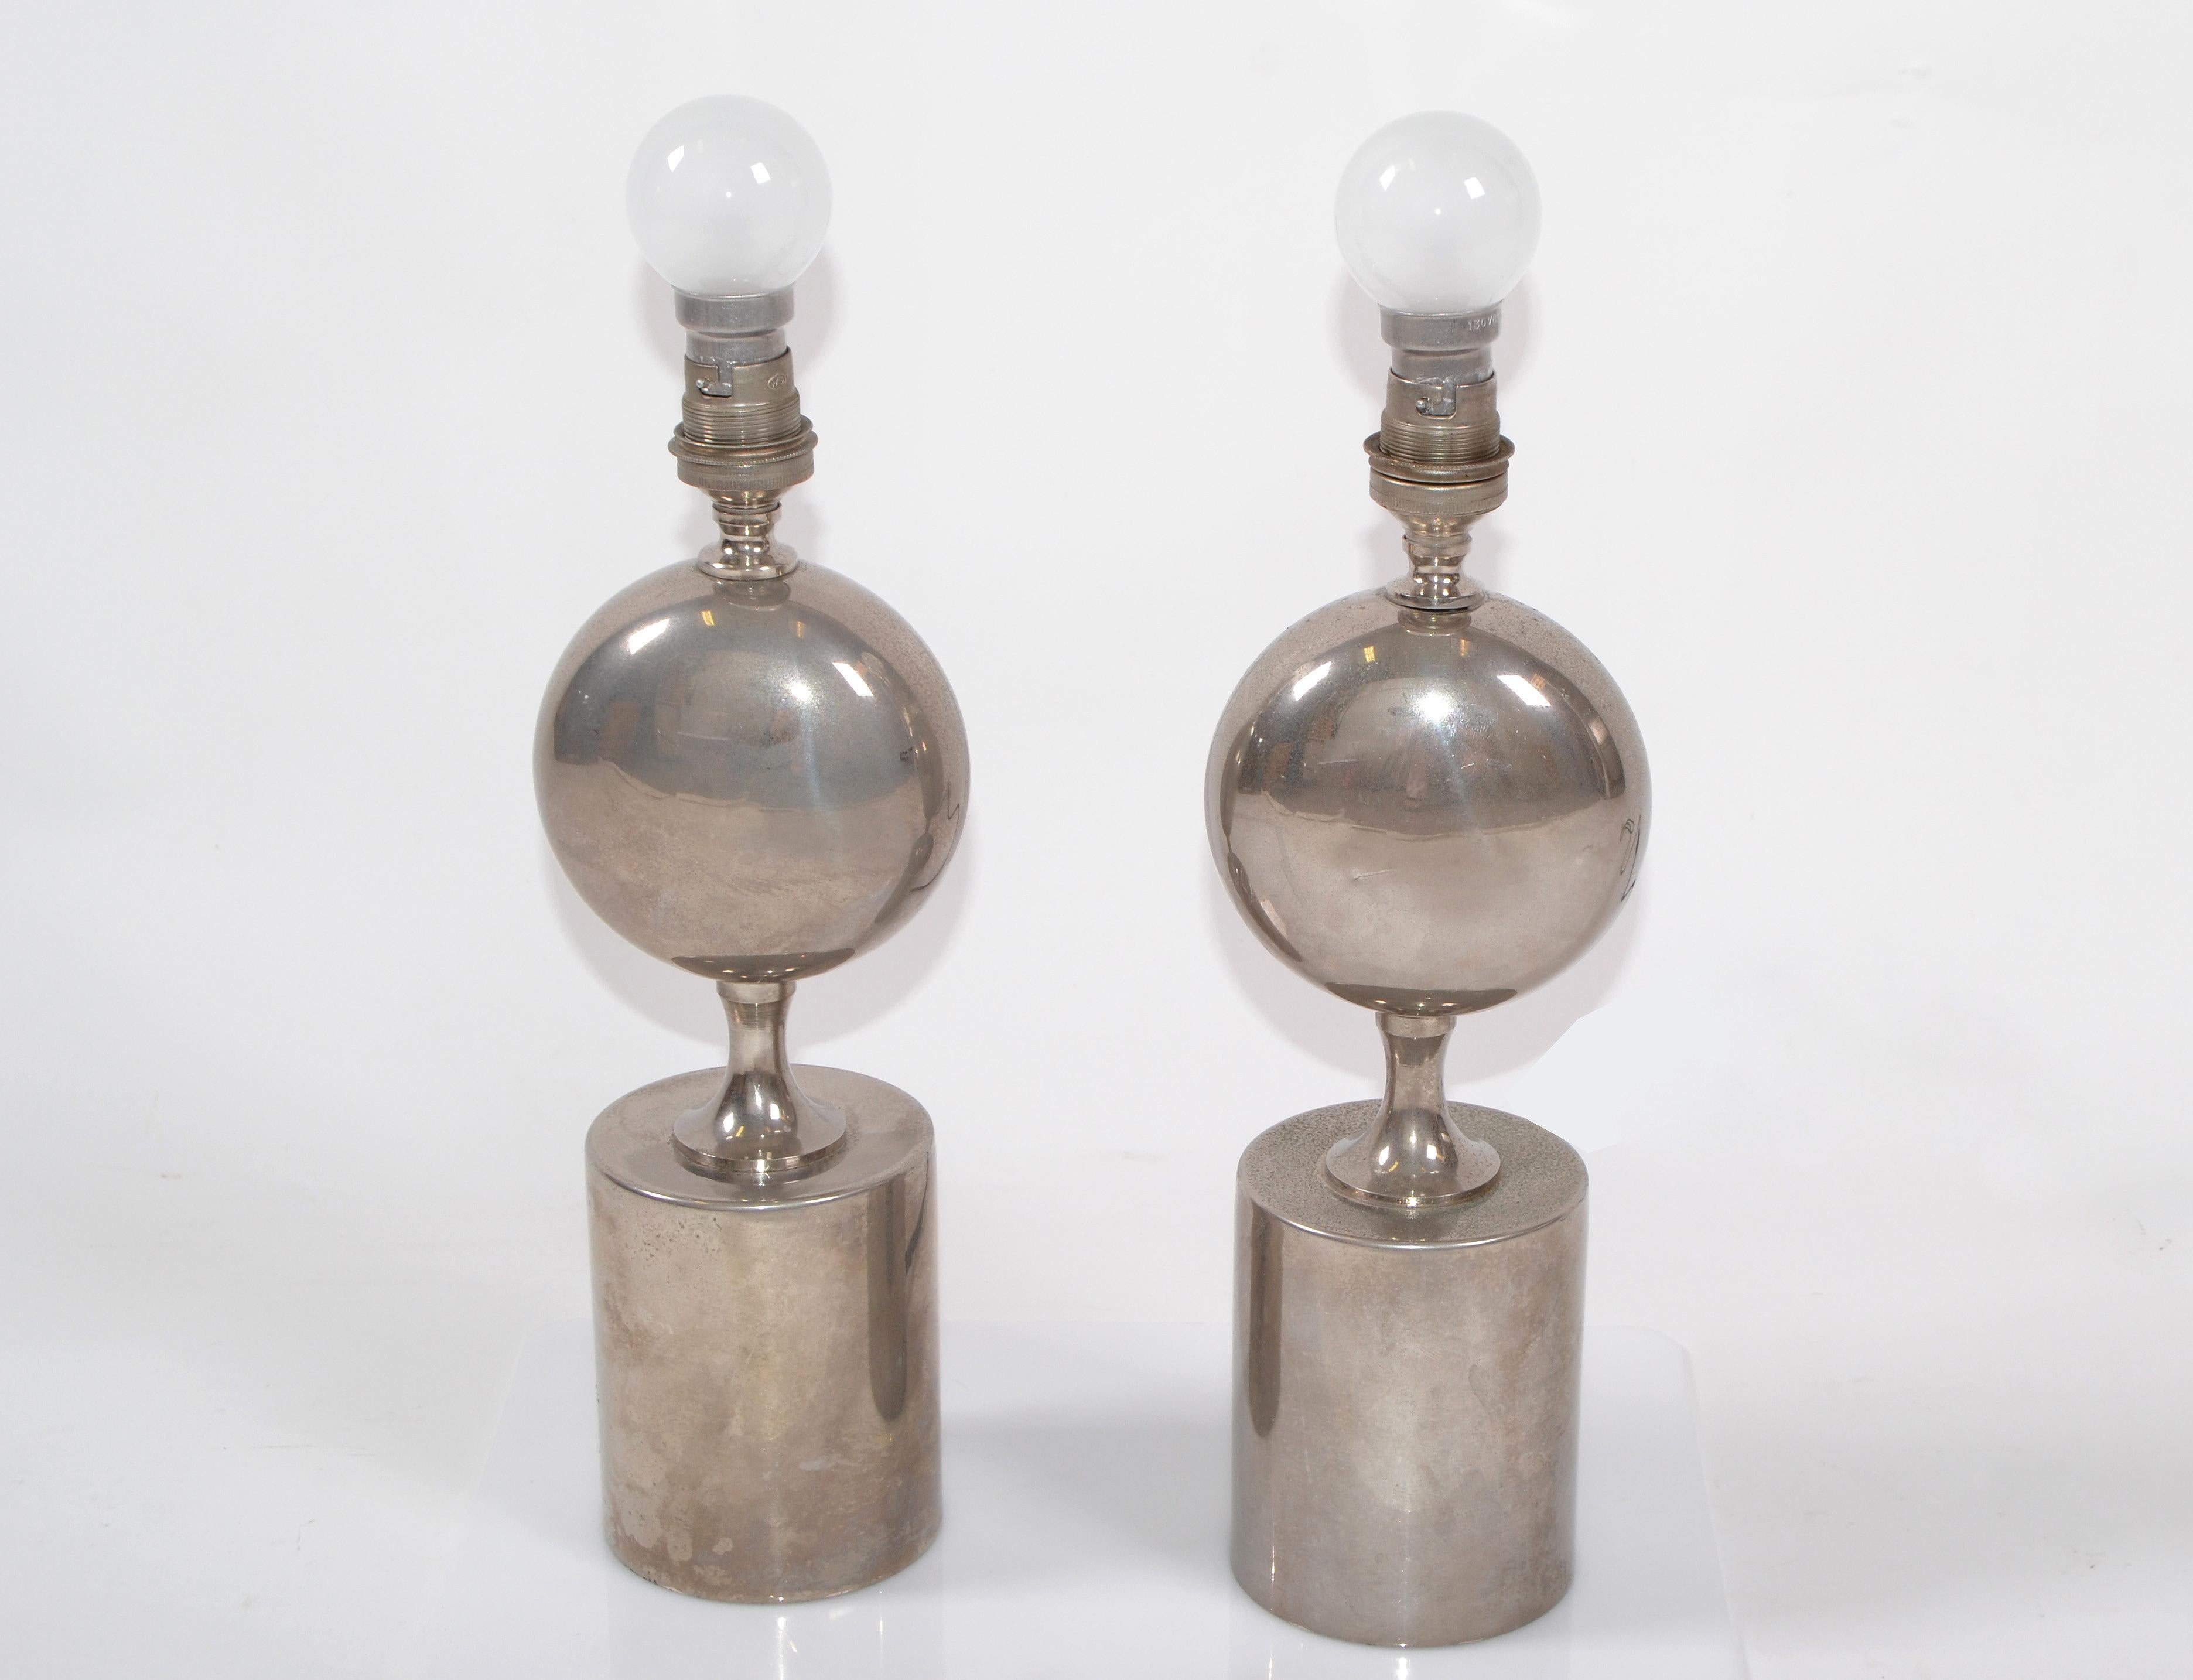 Paire de lampes de table en acier chromé conçues par Philippe Barbier et fabriquées par Maison Barbier en France.
En état de marche, chaque ampoule a une puissance maximale de 40 watts.
    